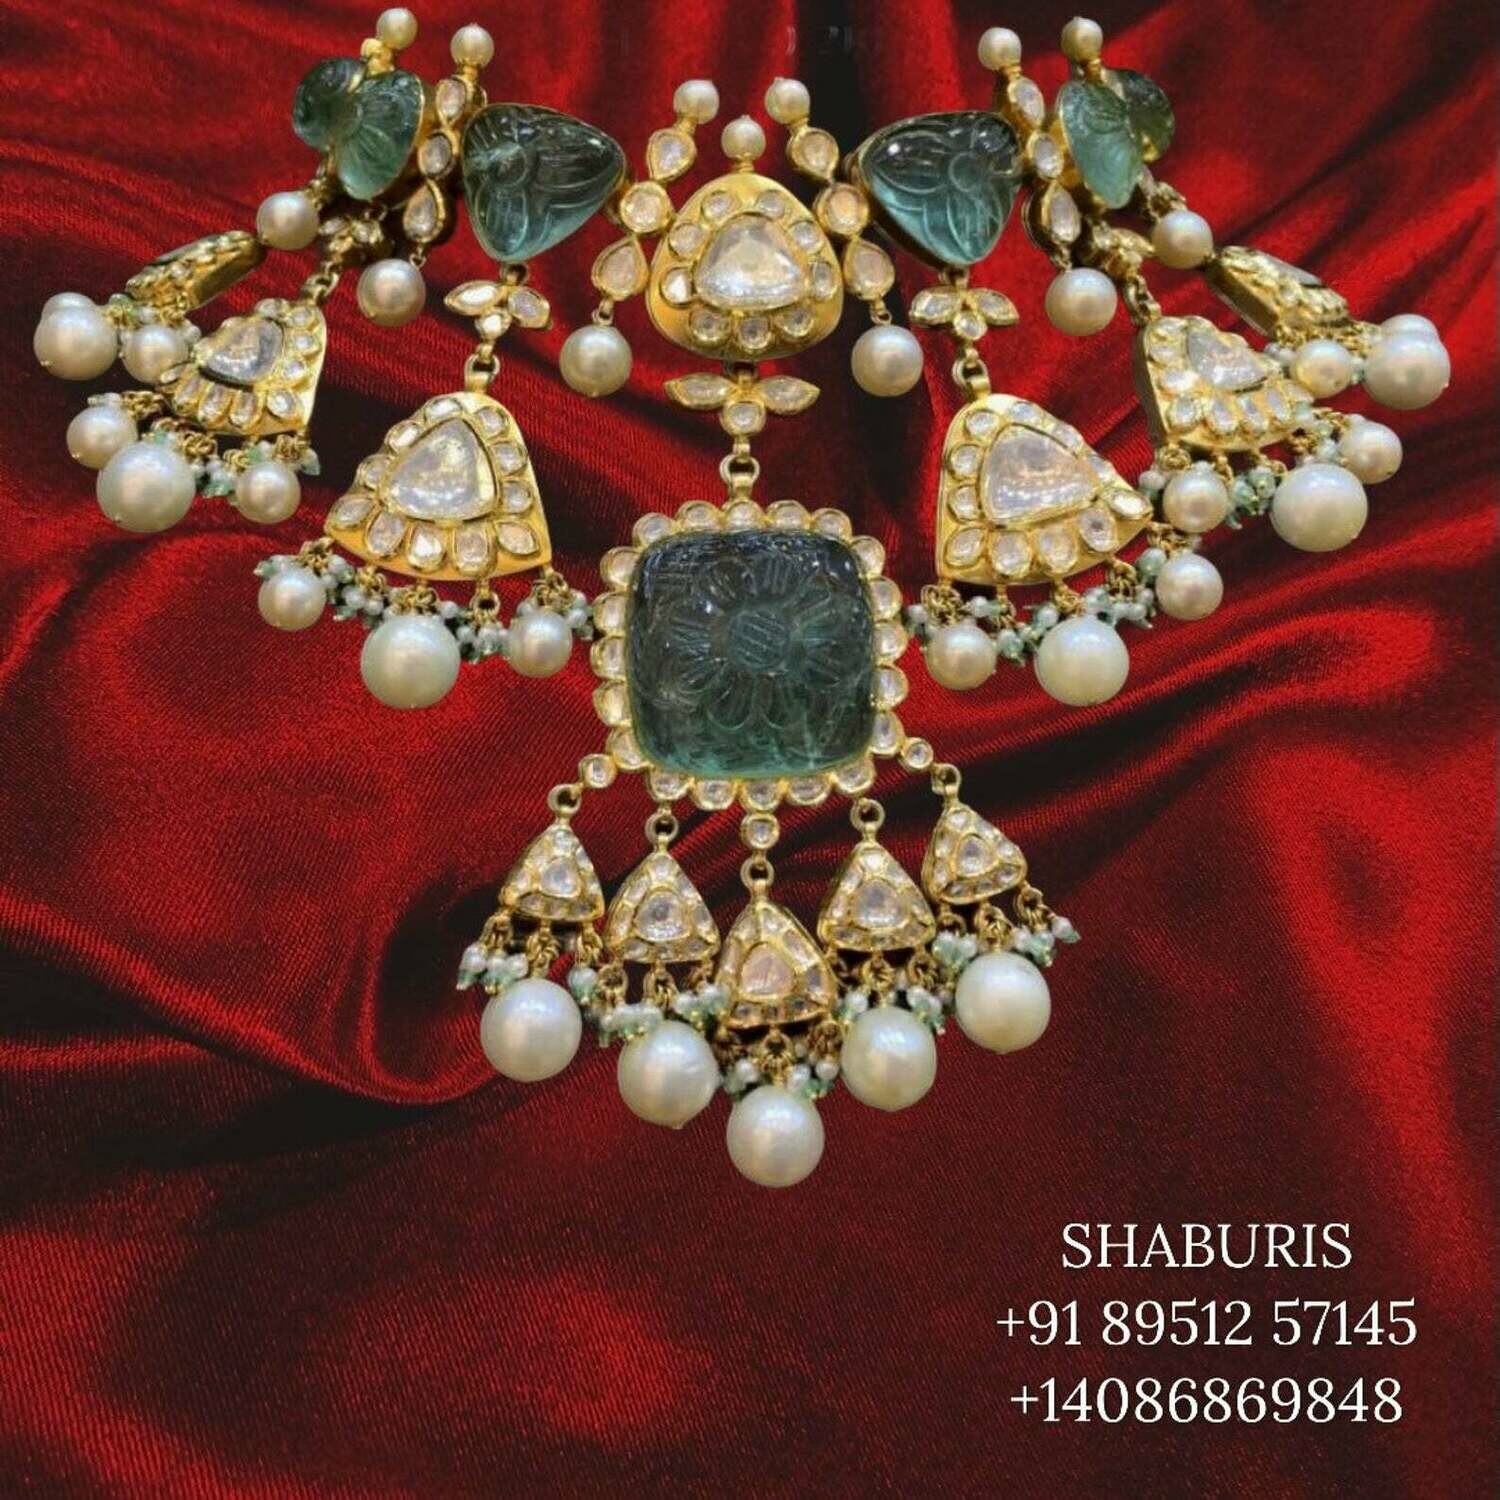 Polki diamond moissanites polki necklace south indian jewelry gold jewelry diamond necklace diamond jewelry - SHABURIS